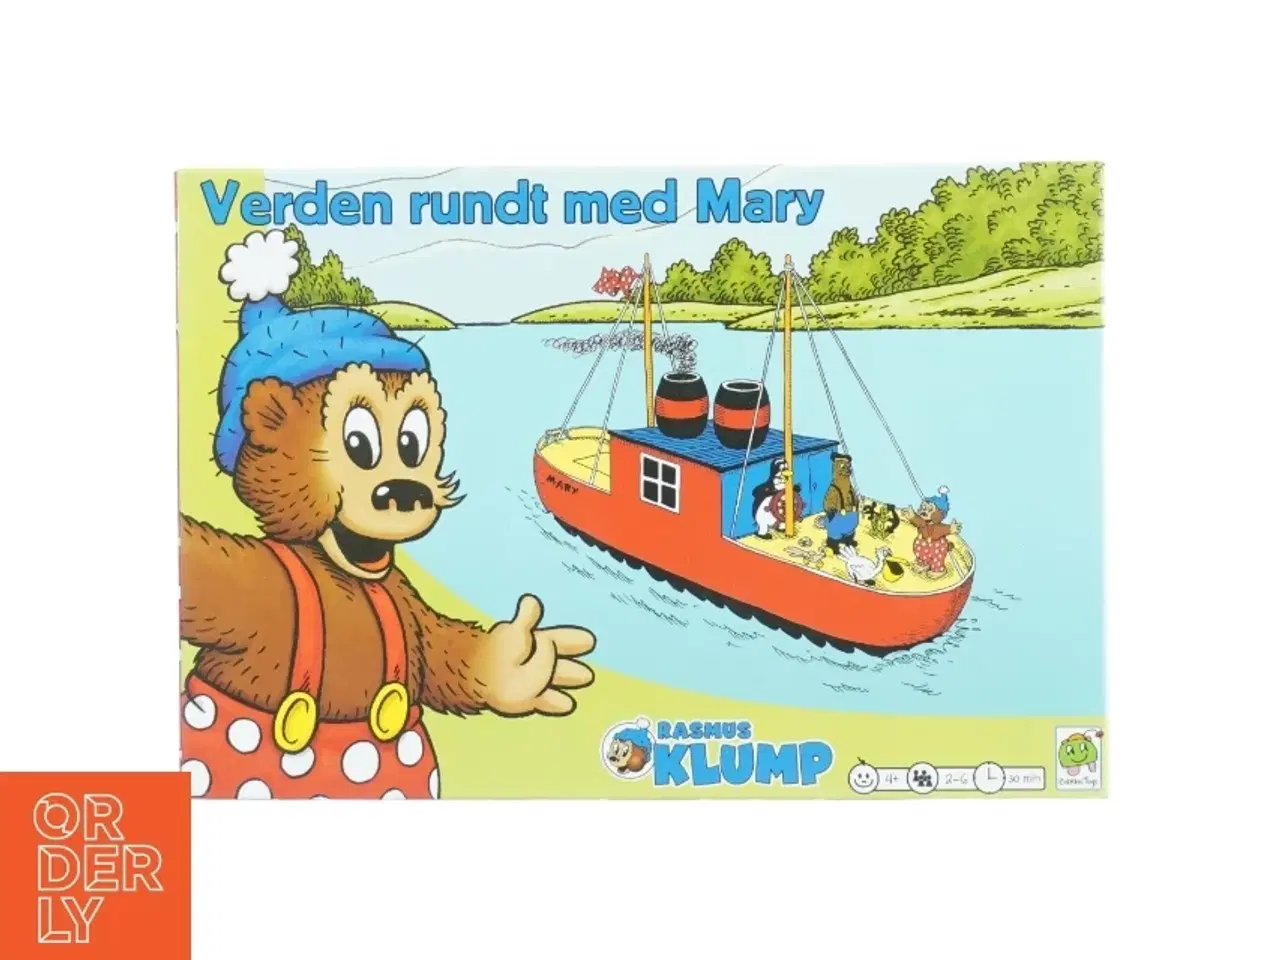 Billede 2 - Rasmus Klump: Verden rundt med Mary brætspil fra Barbo Toys (str. 35 x 24 cm)